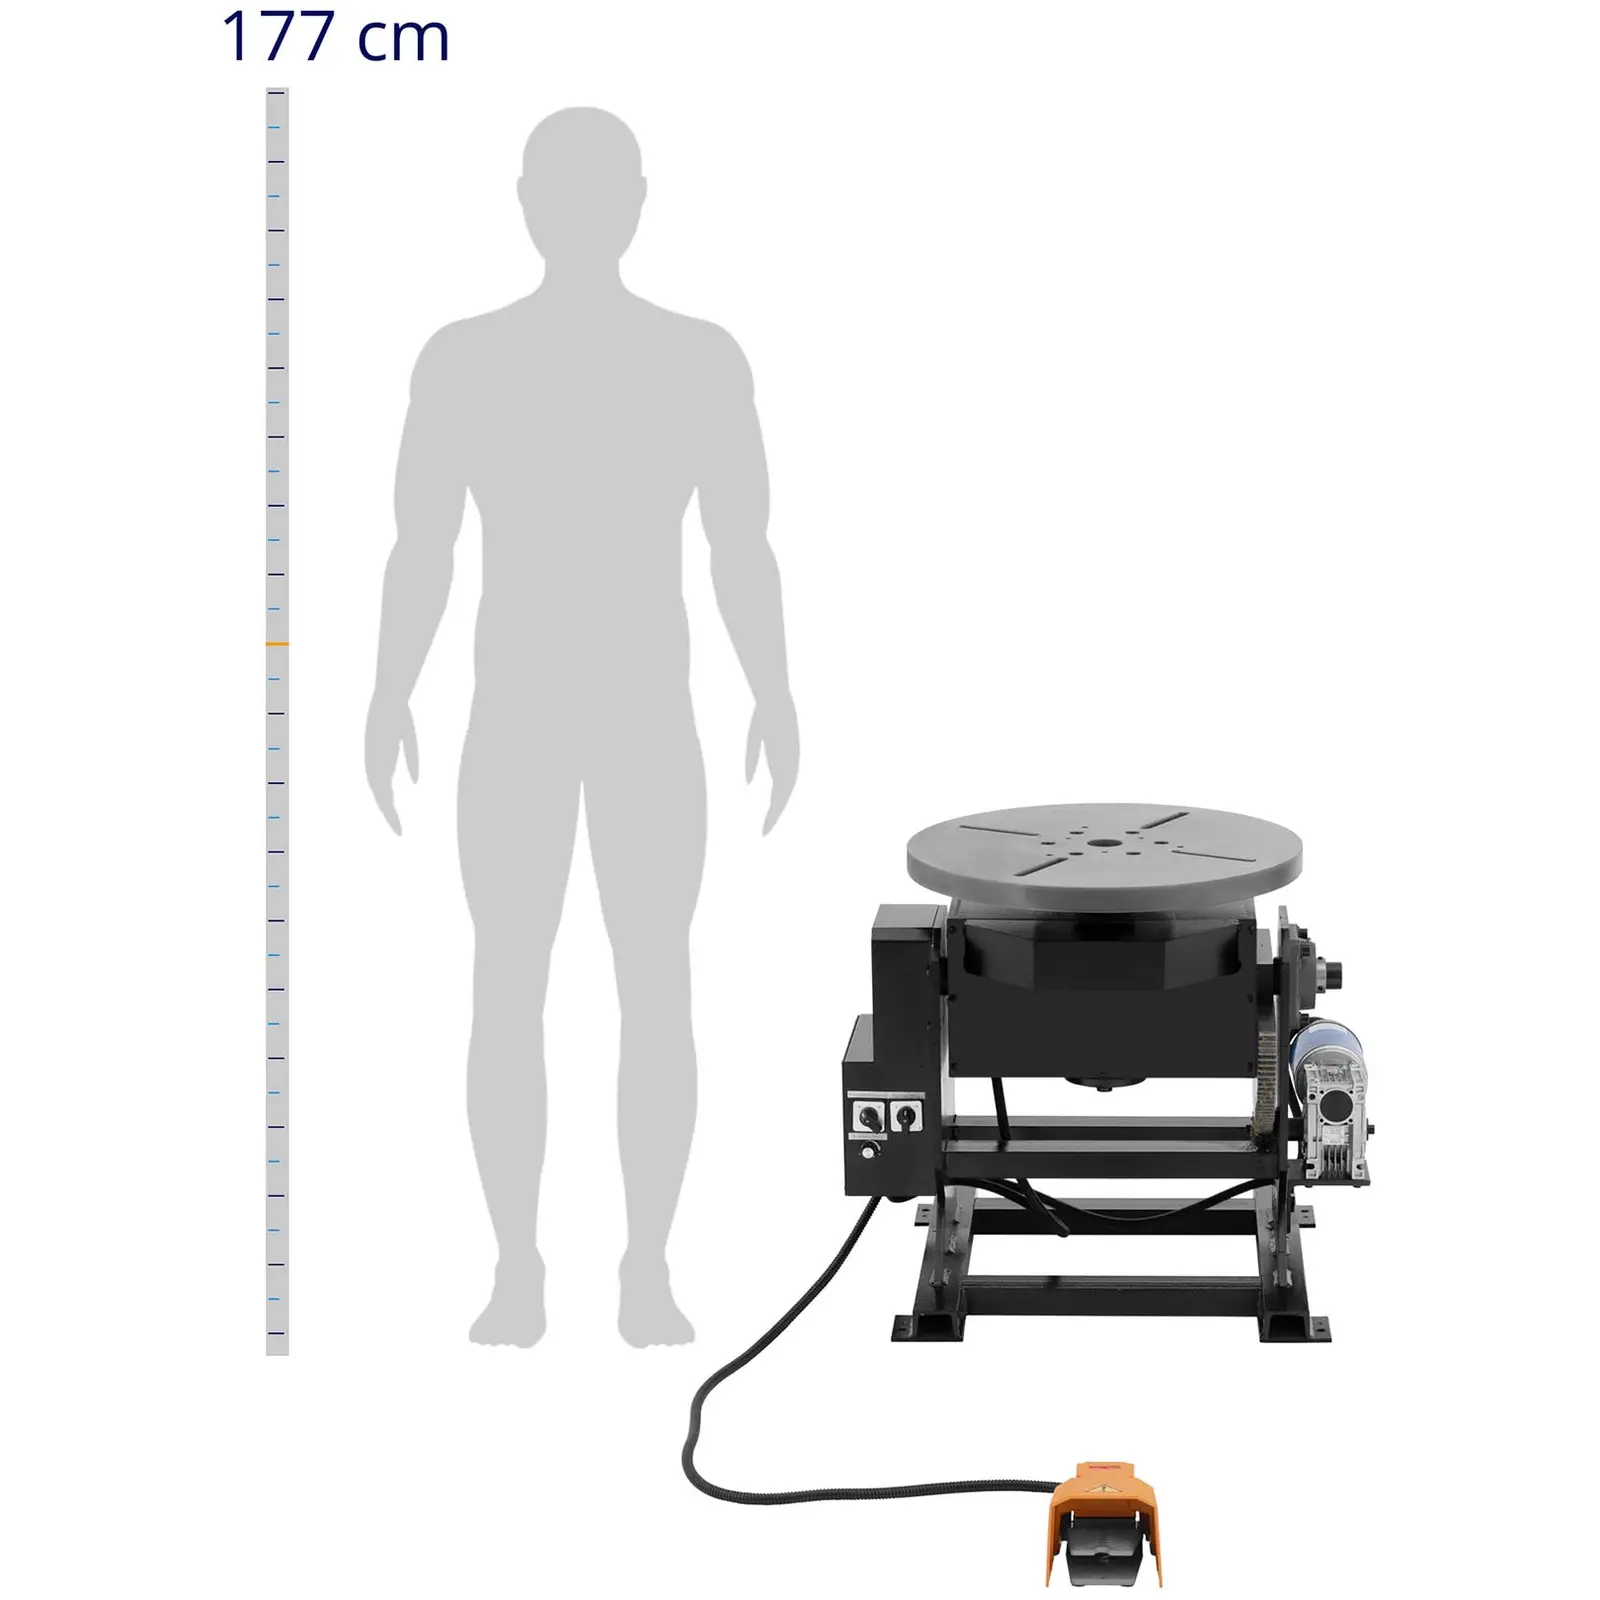 Positionneur de soudage - 500 kg - Inclinaison de la table -45° à 90° - Pédale de commande